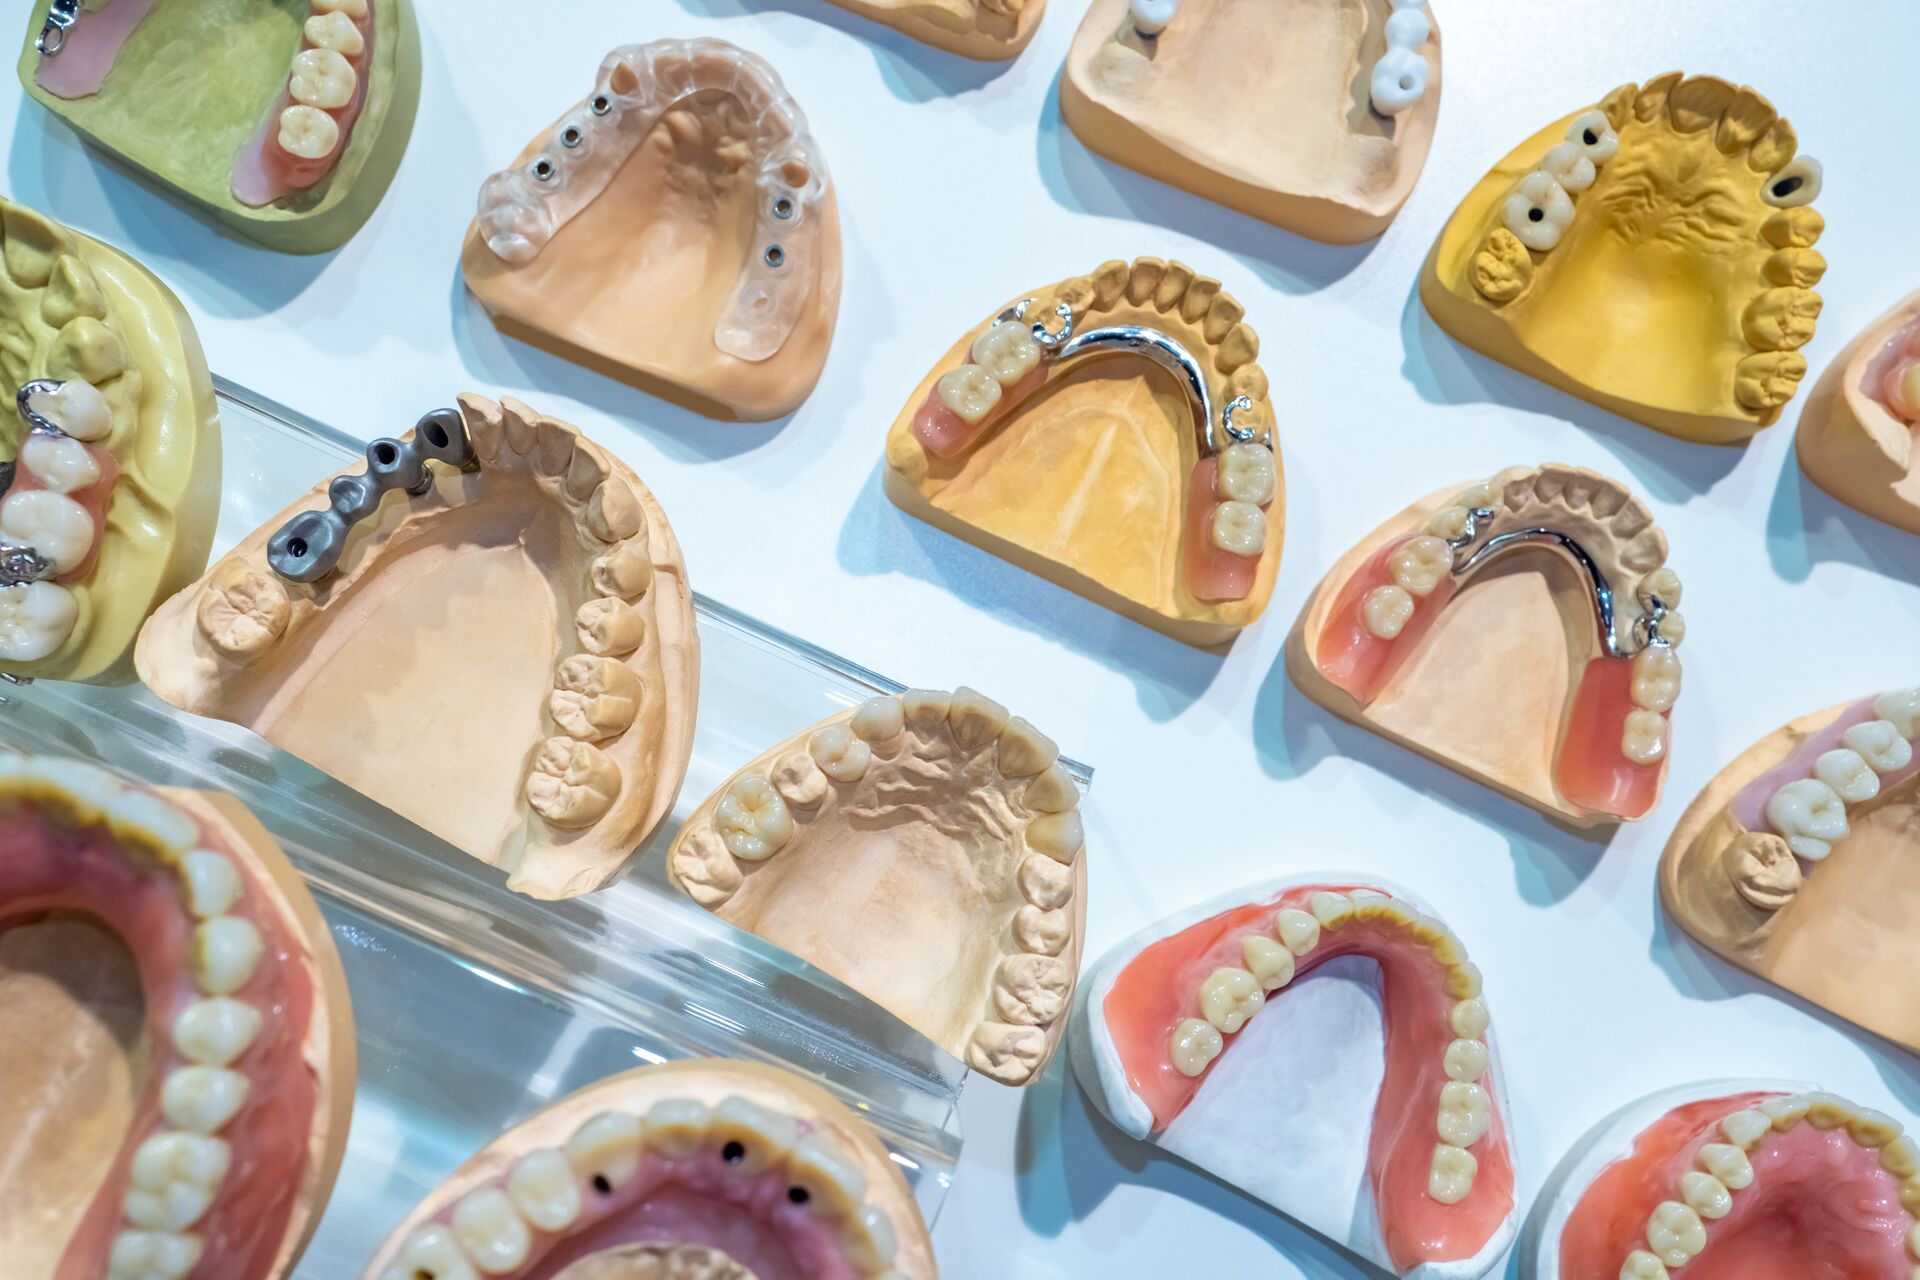 Zahnarzt für Notdienst, Zahnarzt-Angst & mehr